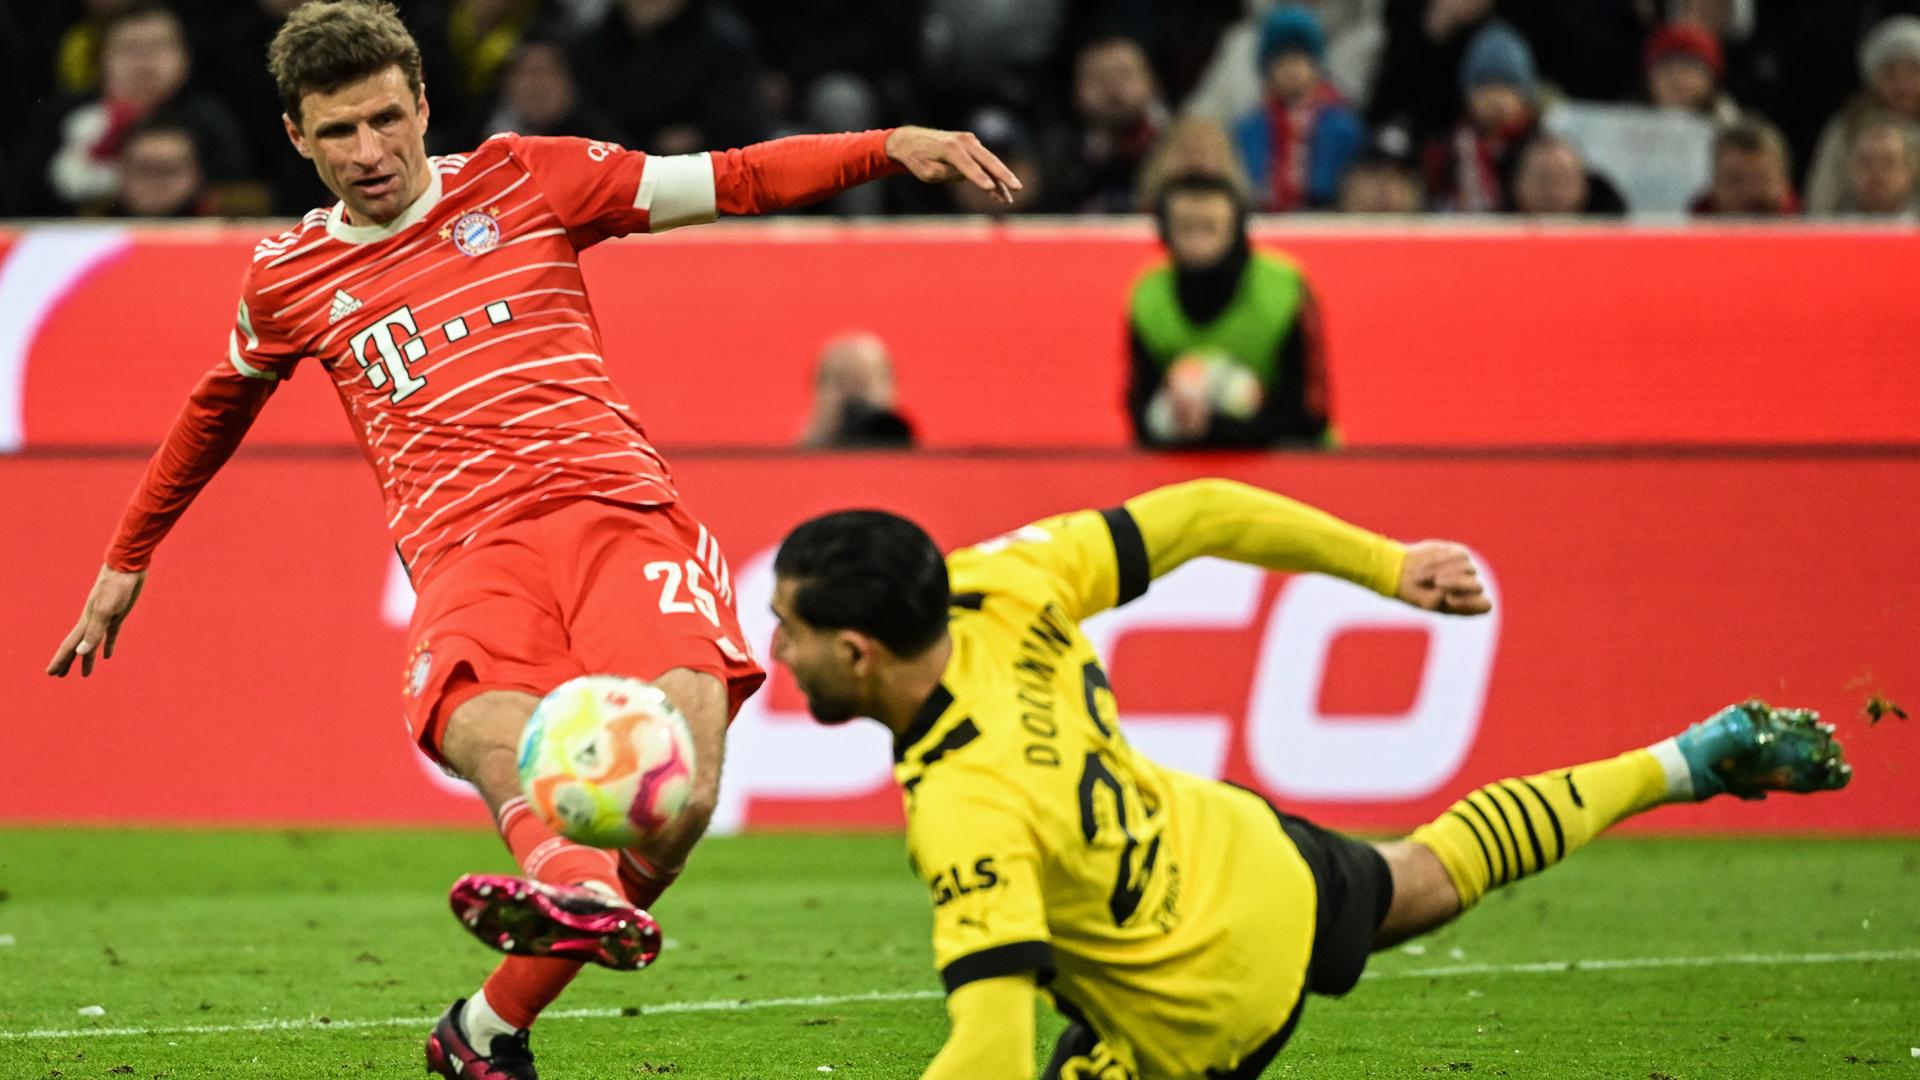 Fußball-Bundesliga - Bayern besiegt Dortmund - Leverkusen schlägt Schalke - Mainz triumphiert gegen Leipzig